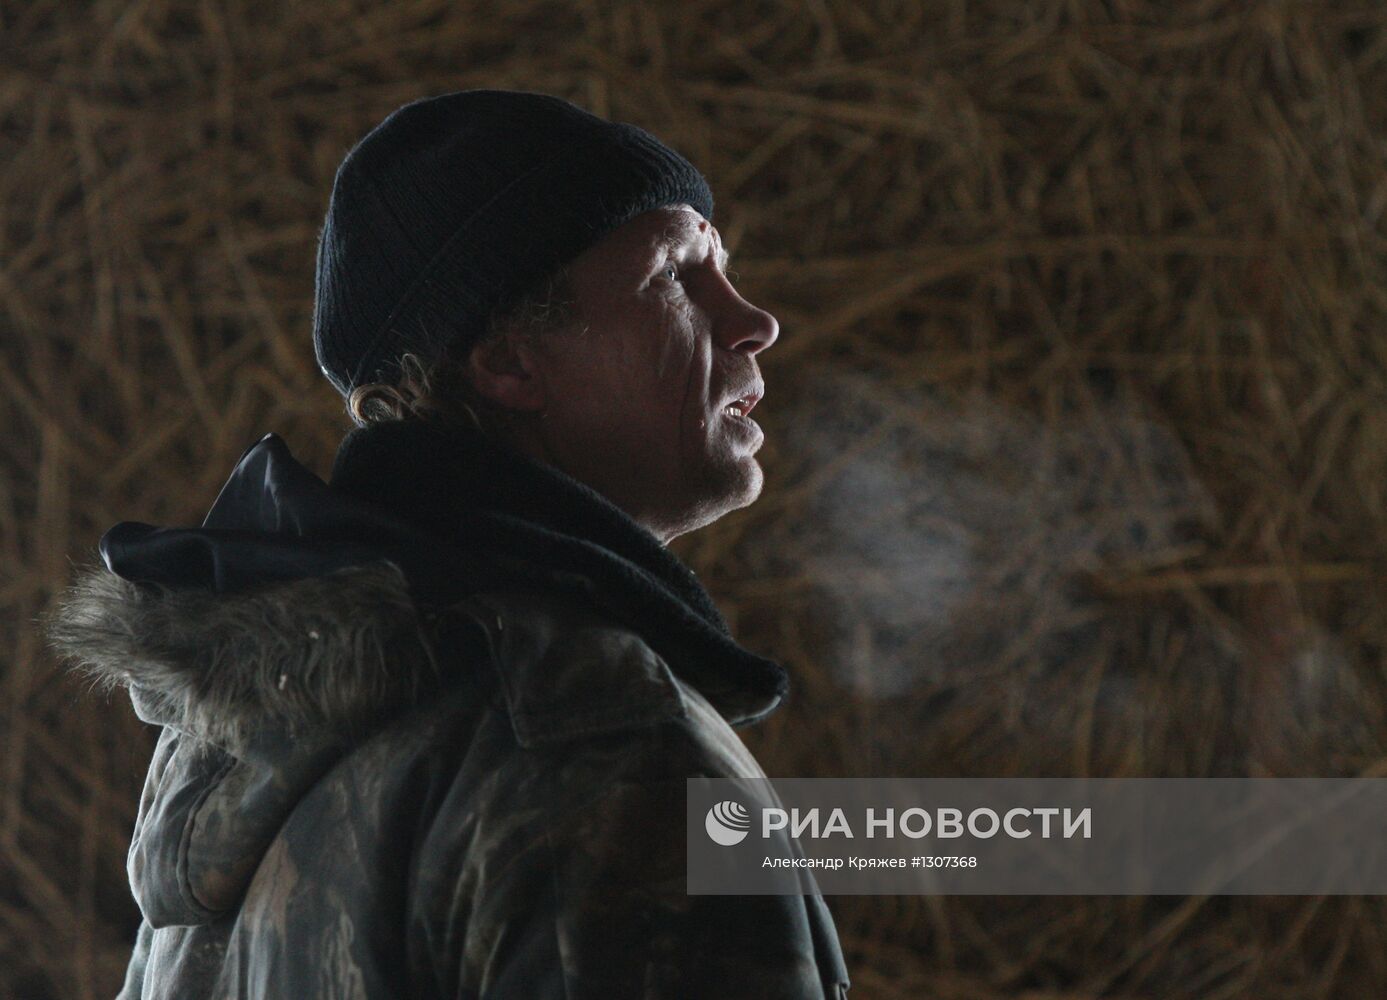 Пенсионеры Толстоуховы строят дом из соломы в Алтайском крае